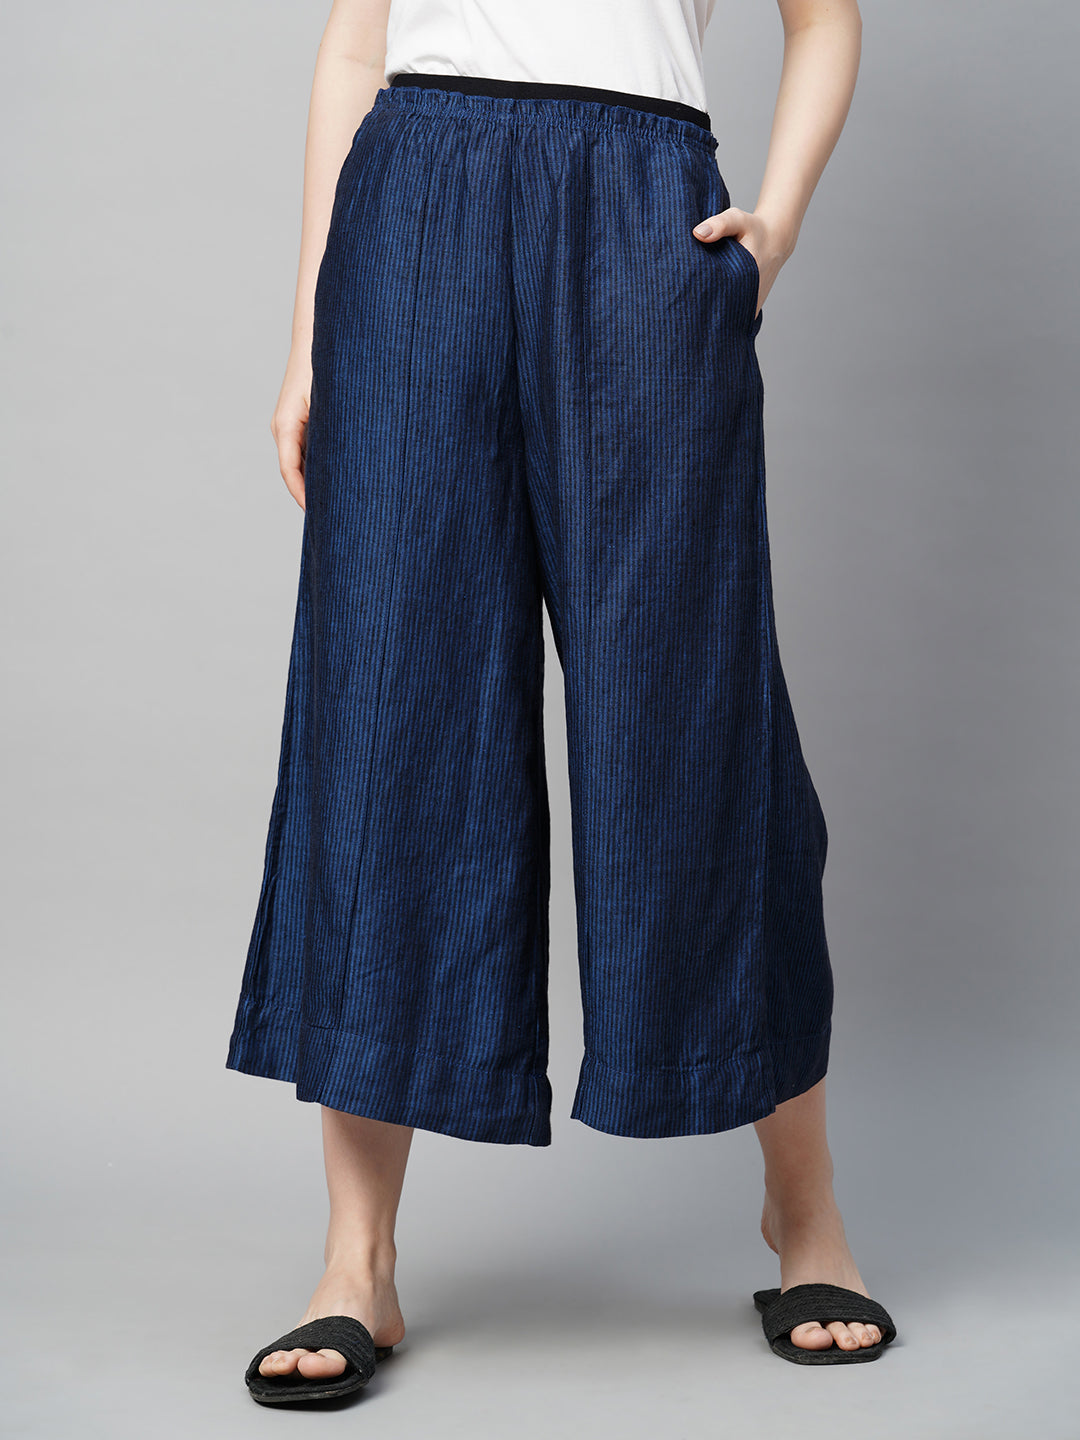 Women's Blue Linen Regular Fit Culotte